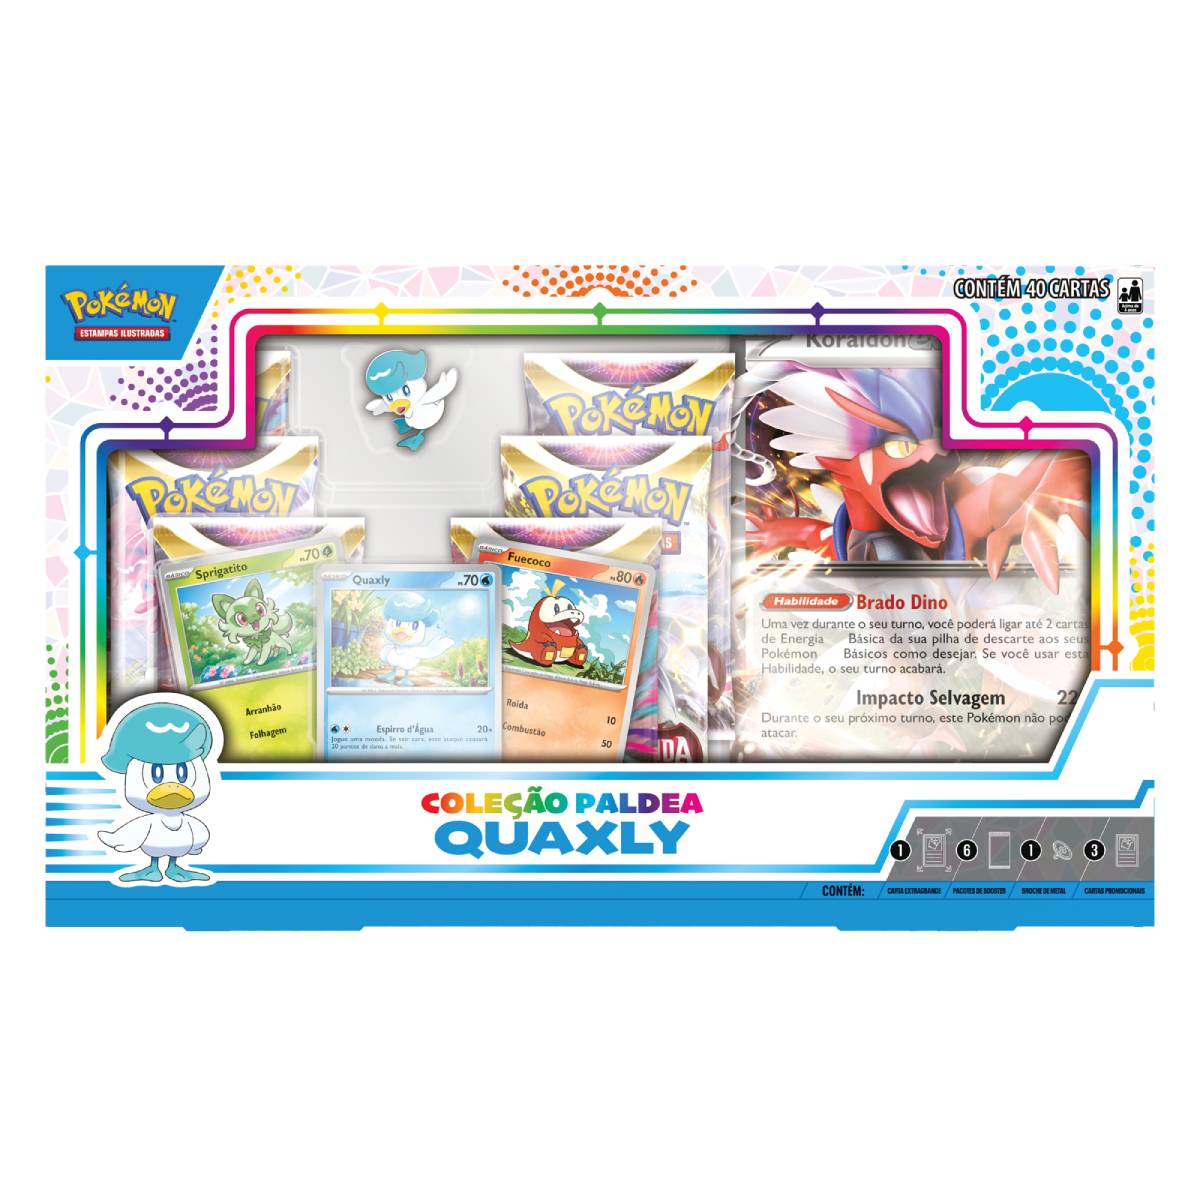 2 Box Pokémon Lendas de Paldea Koraidon ex e Miraidon ex Copag Cards Cartas  em português oficial original boosters